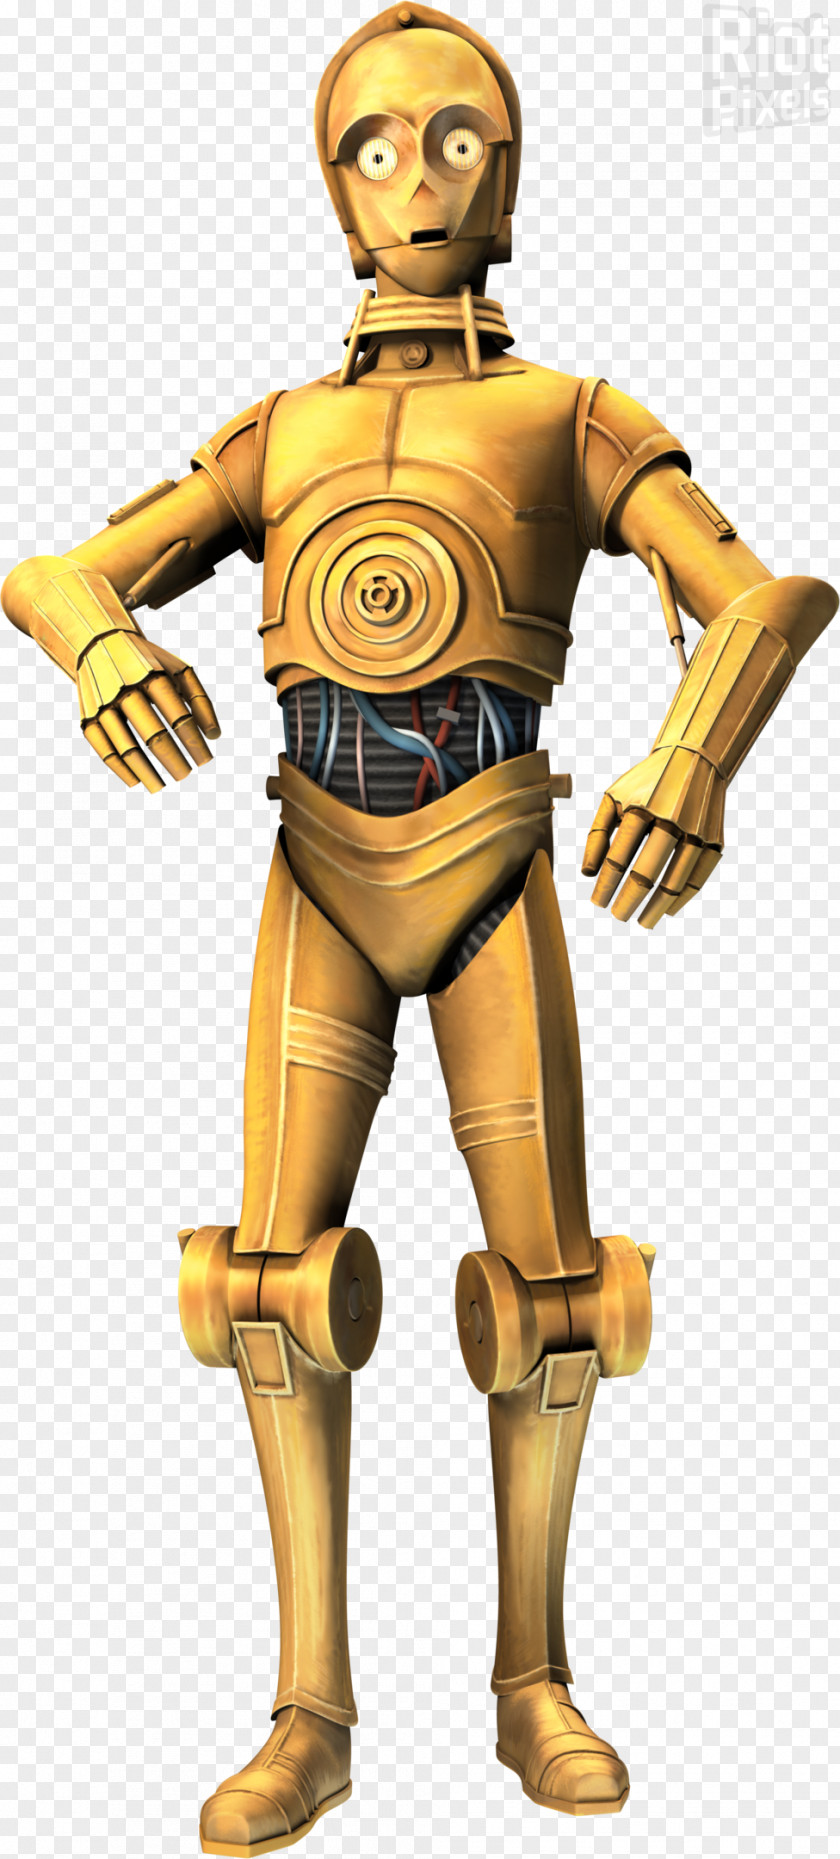 Star Wars C-3PO R2-D2 Clone Trooper PNG